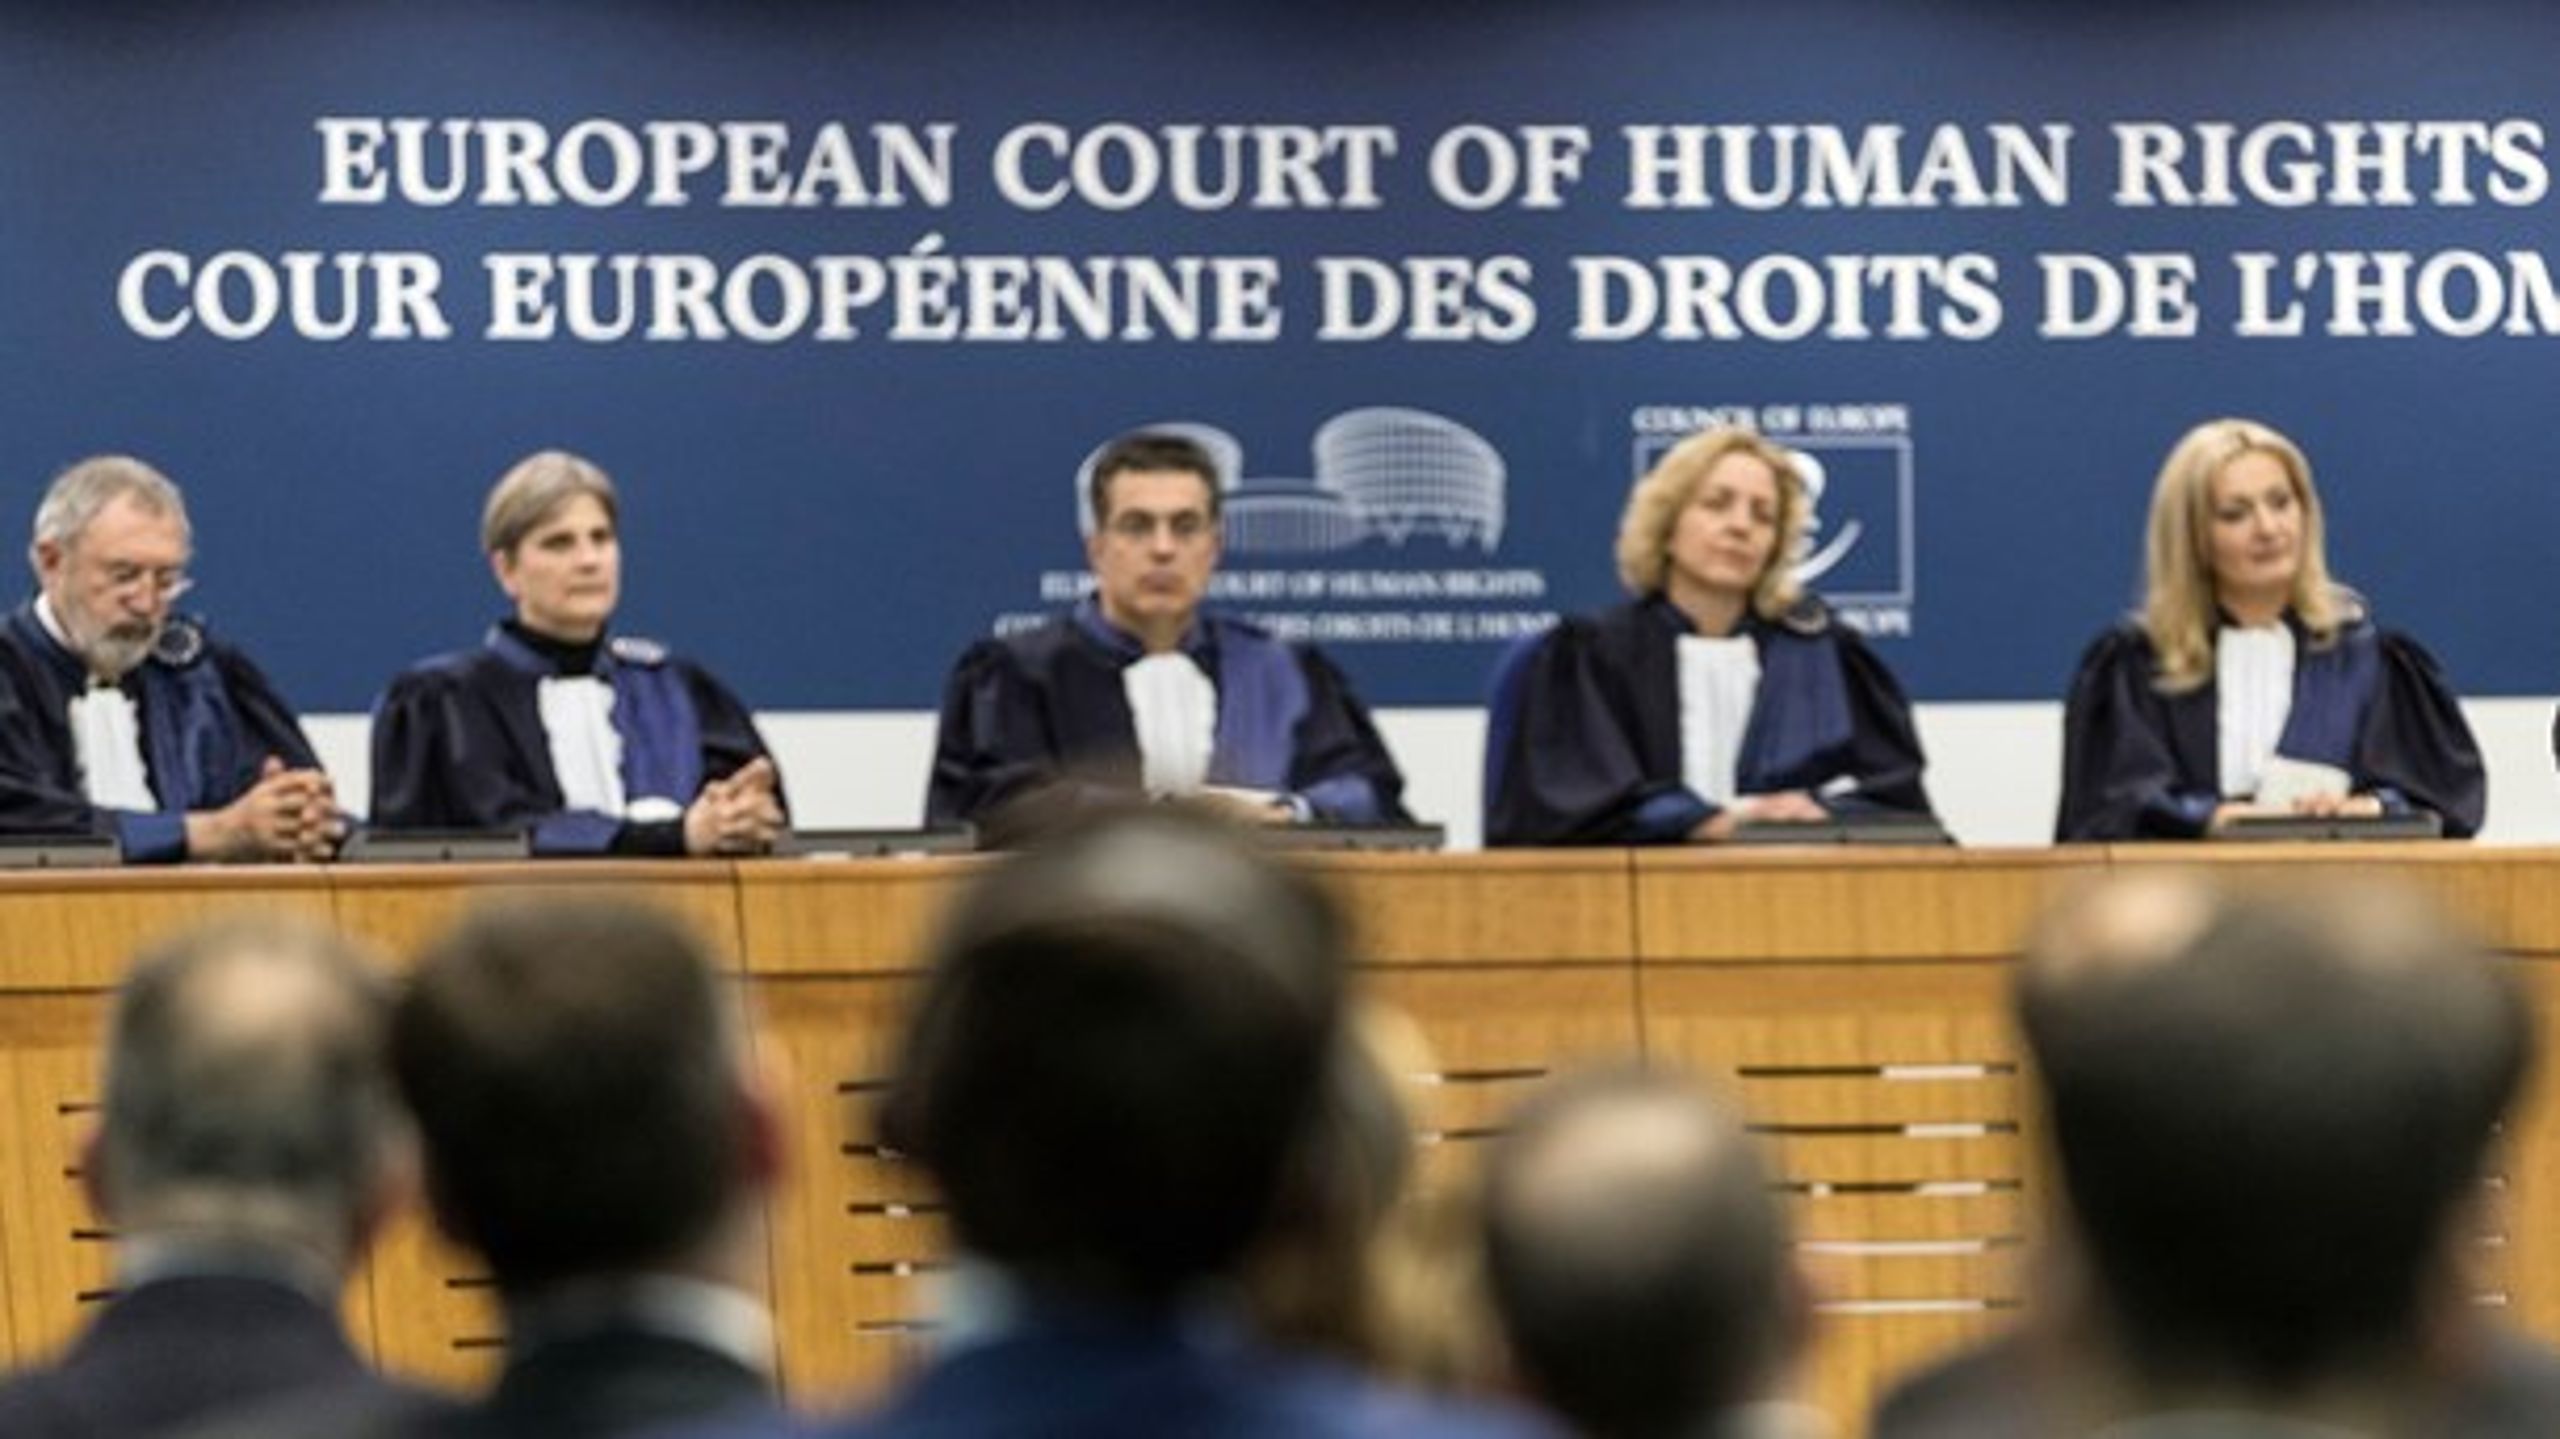 Det er især&nbsp;Den Europæiske Menneskerettighedsdomstols beskyttelse af kriminelle, der har&nbsp;gjort den til midtpunkt i striden mellem politikere og dommere.&nbsp;<br>